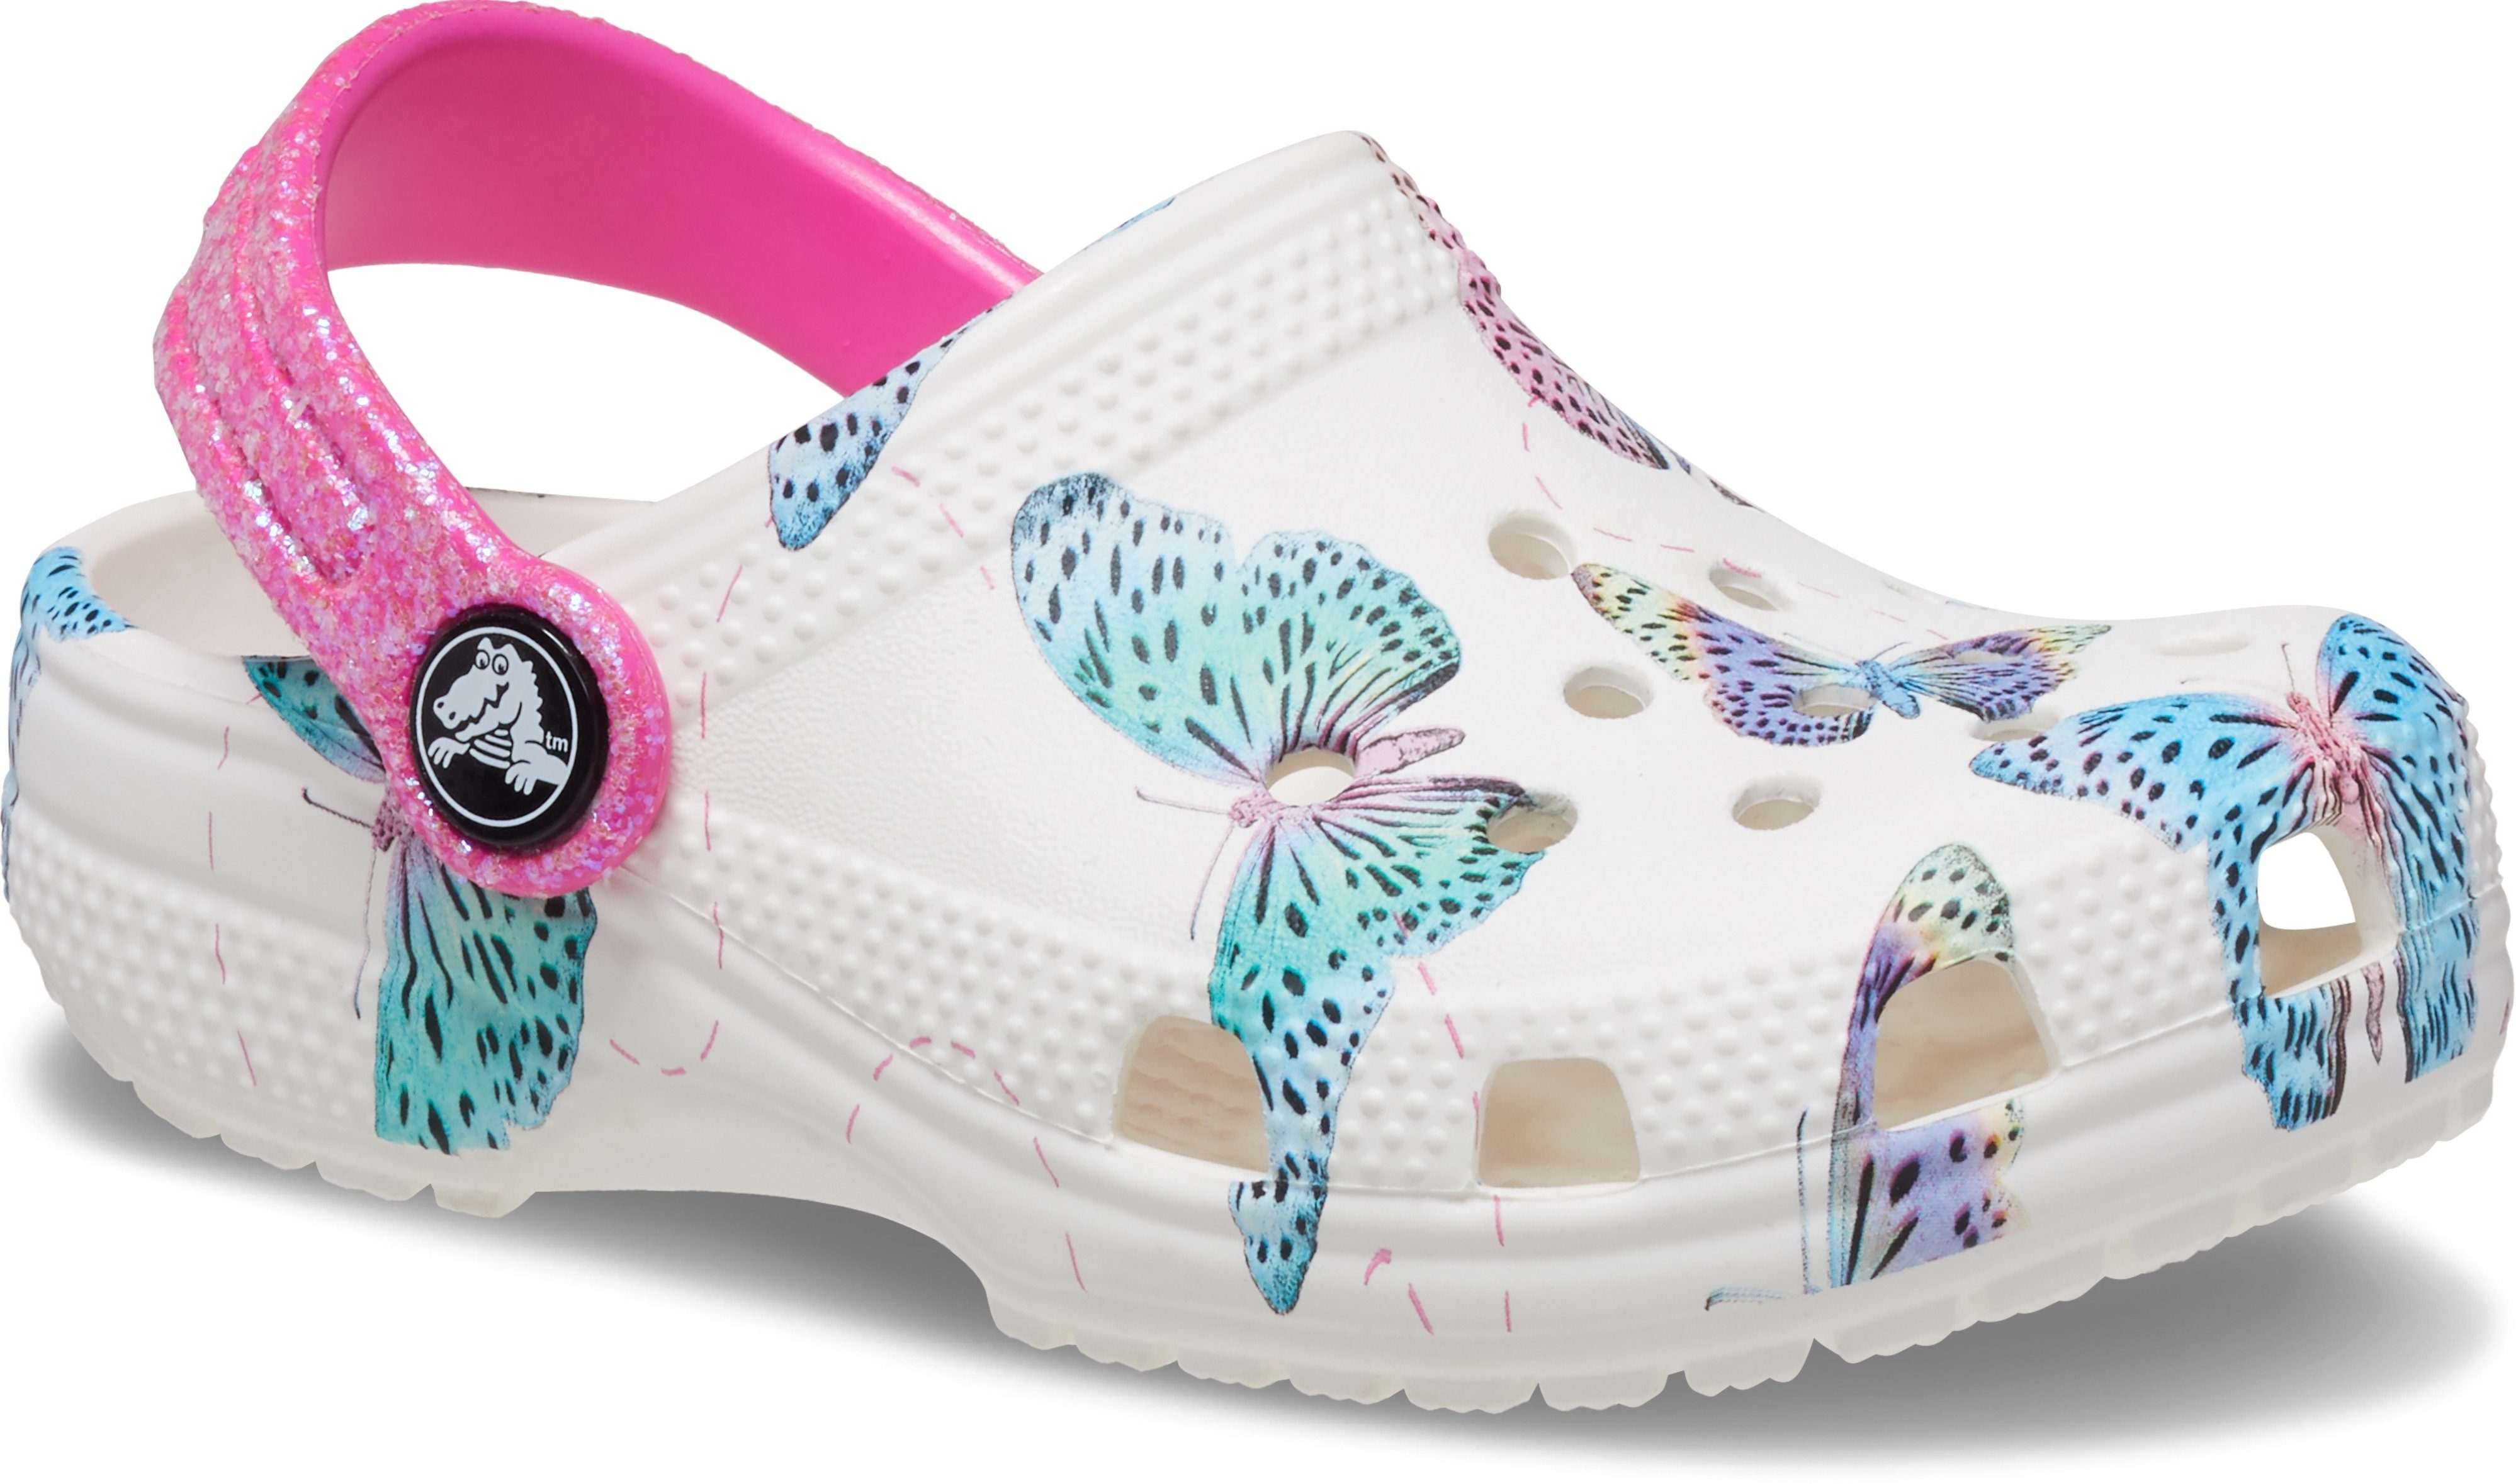 Hausschuh mit Crocs weiß-pink-Schmetterling Fersenriemen